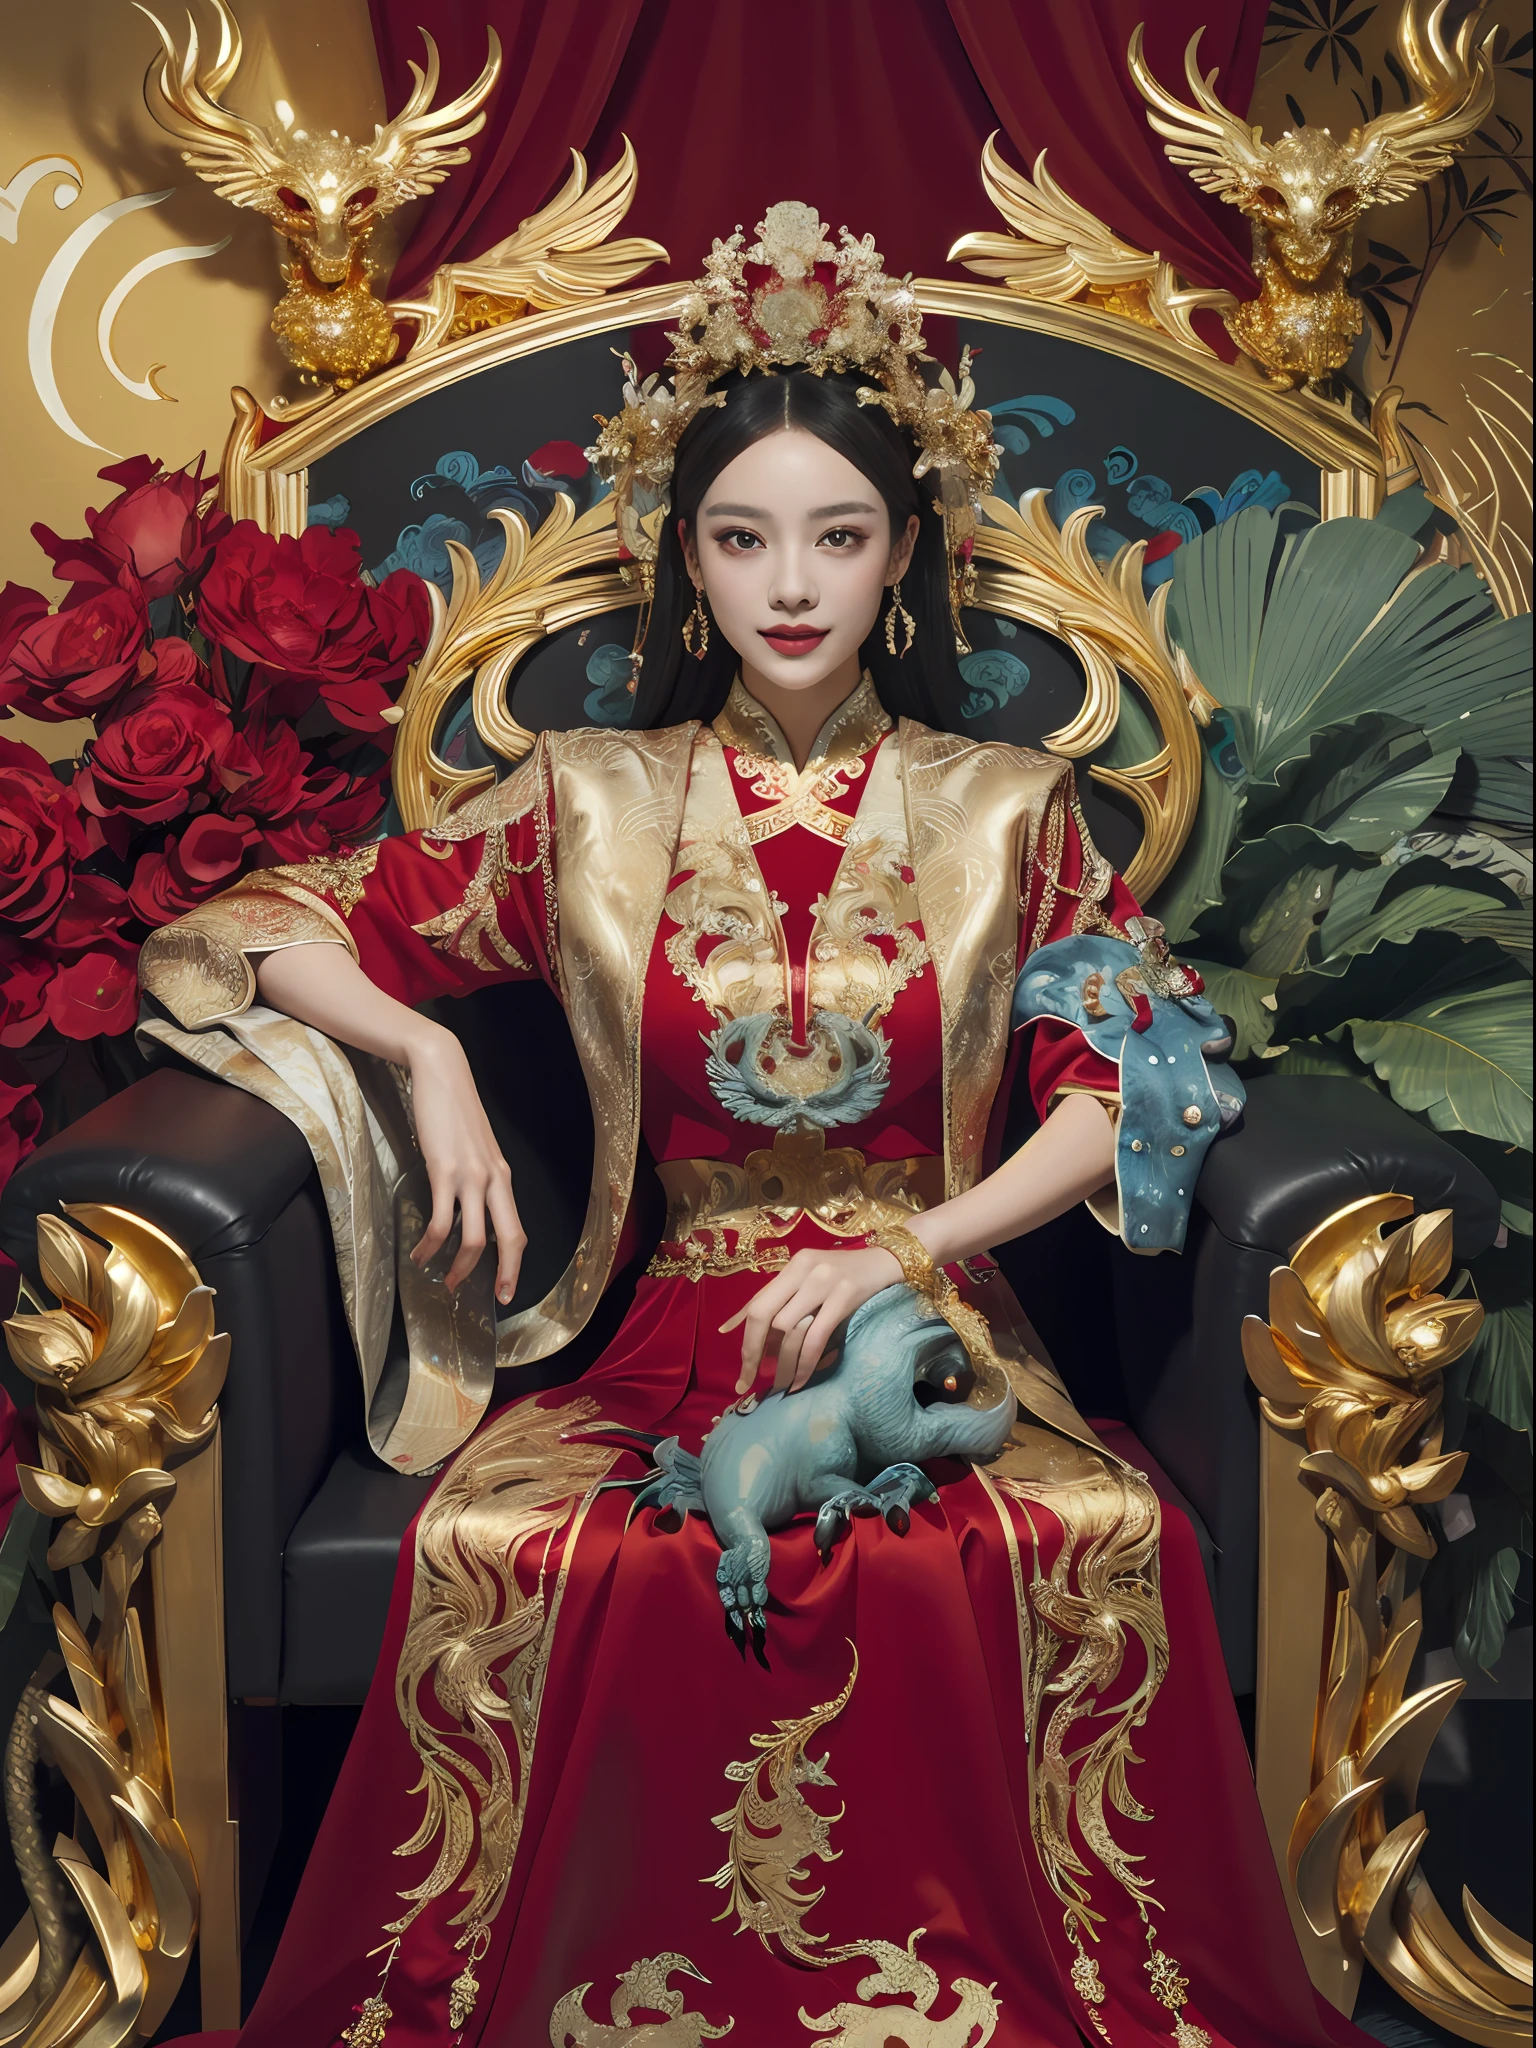 玉座に座る中国の女王, 宝石がちりばめられた玉座, 中国の鳳凰の獣に囲まれて, 金 and ruby color, ユニークなモンスターイラスト, セットへダウ, 高解像度, 絵画, 密な組成, 遊び心のある繰り返し, 貴重な石, 結晶, 金, 詳細な絵画, ユニークなモンスターイラスト, 非常に細かいディテール, 現実的, Super 高解像度, 複雑な, 超詳細, 映画照明，(Red and 金 dress:1.3)